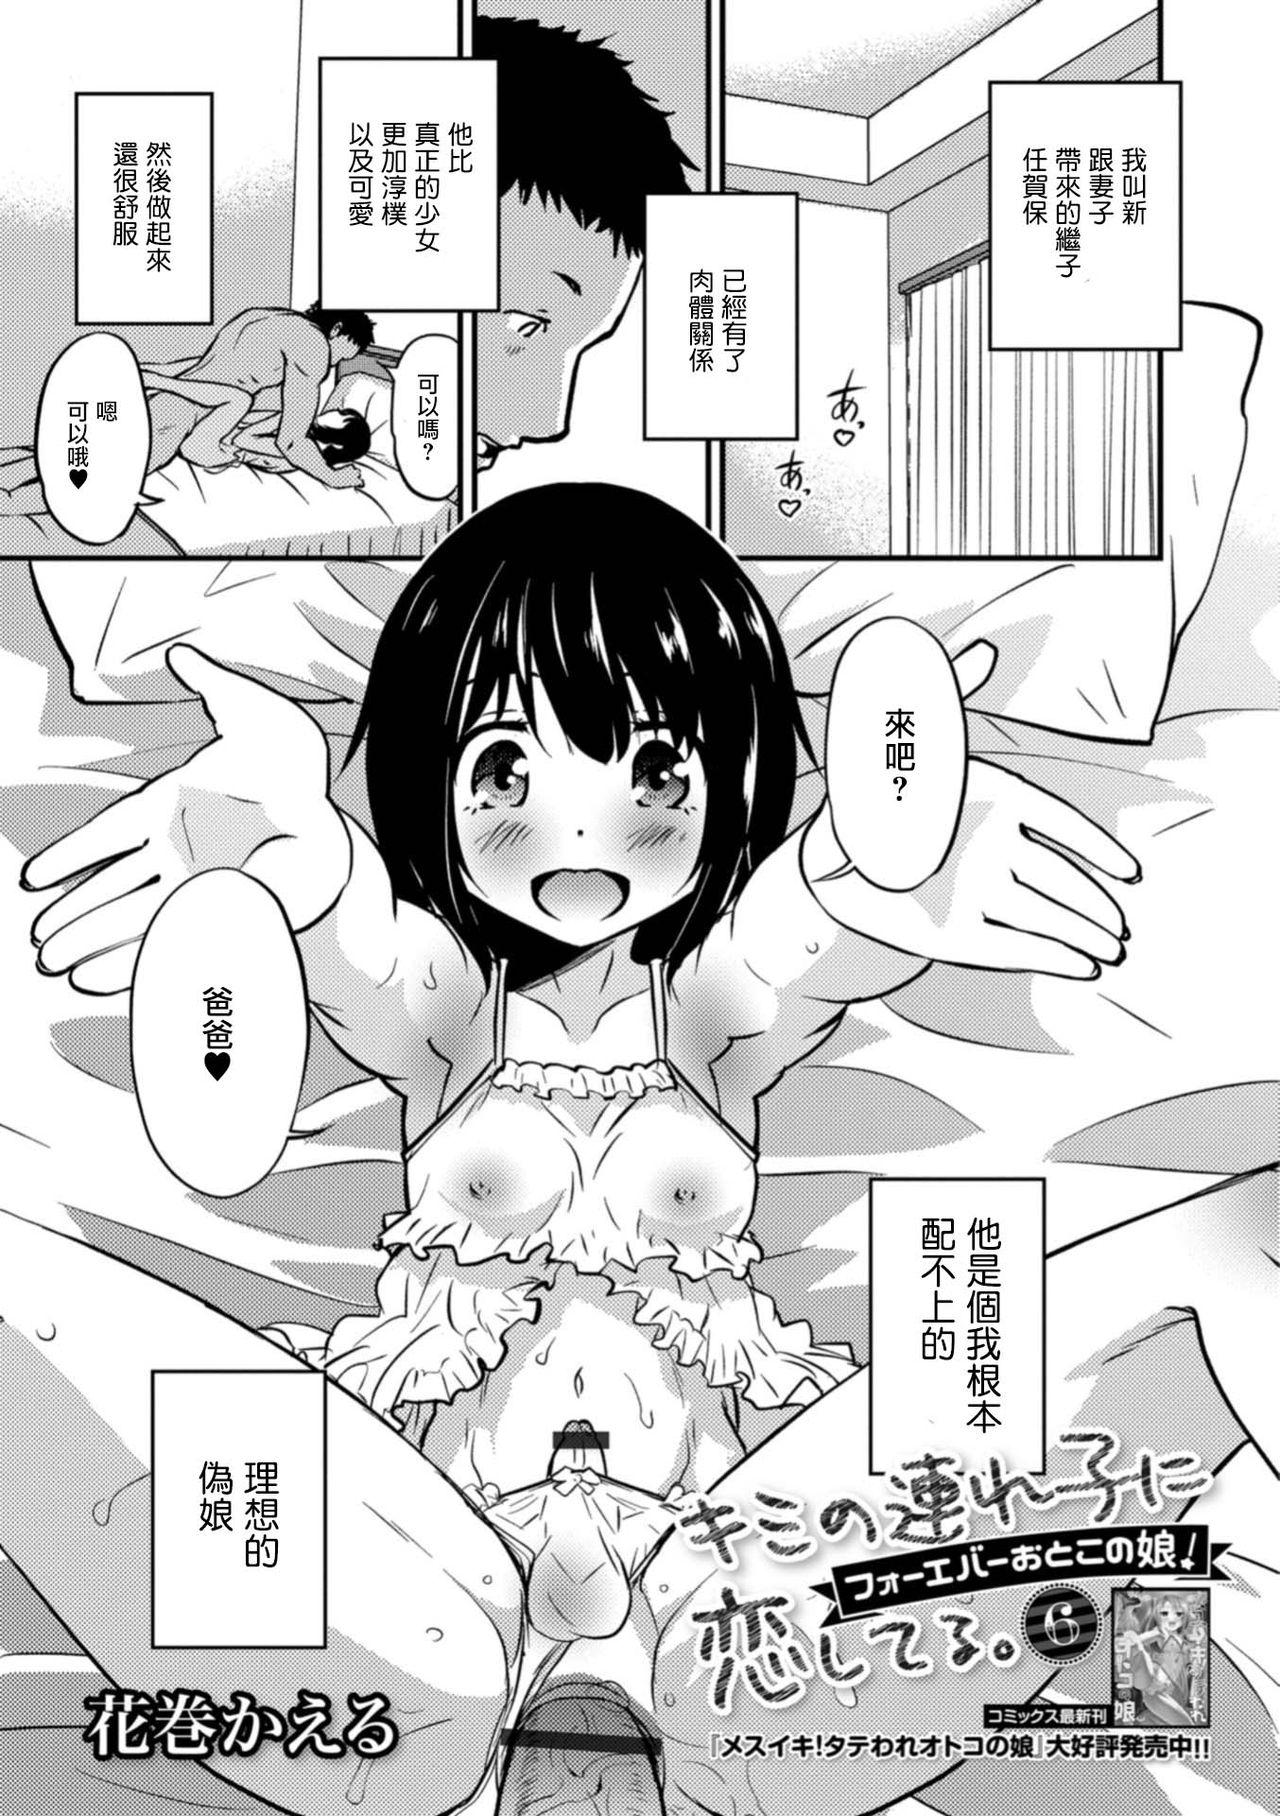 Gritona Kimi no Tsureko ni Koishiteru. 6 Forever Otokonoko! Storyline - Page 1